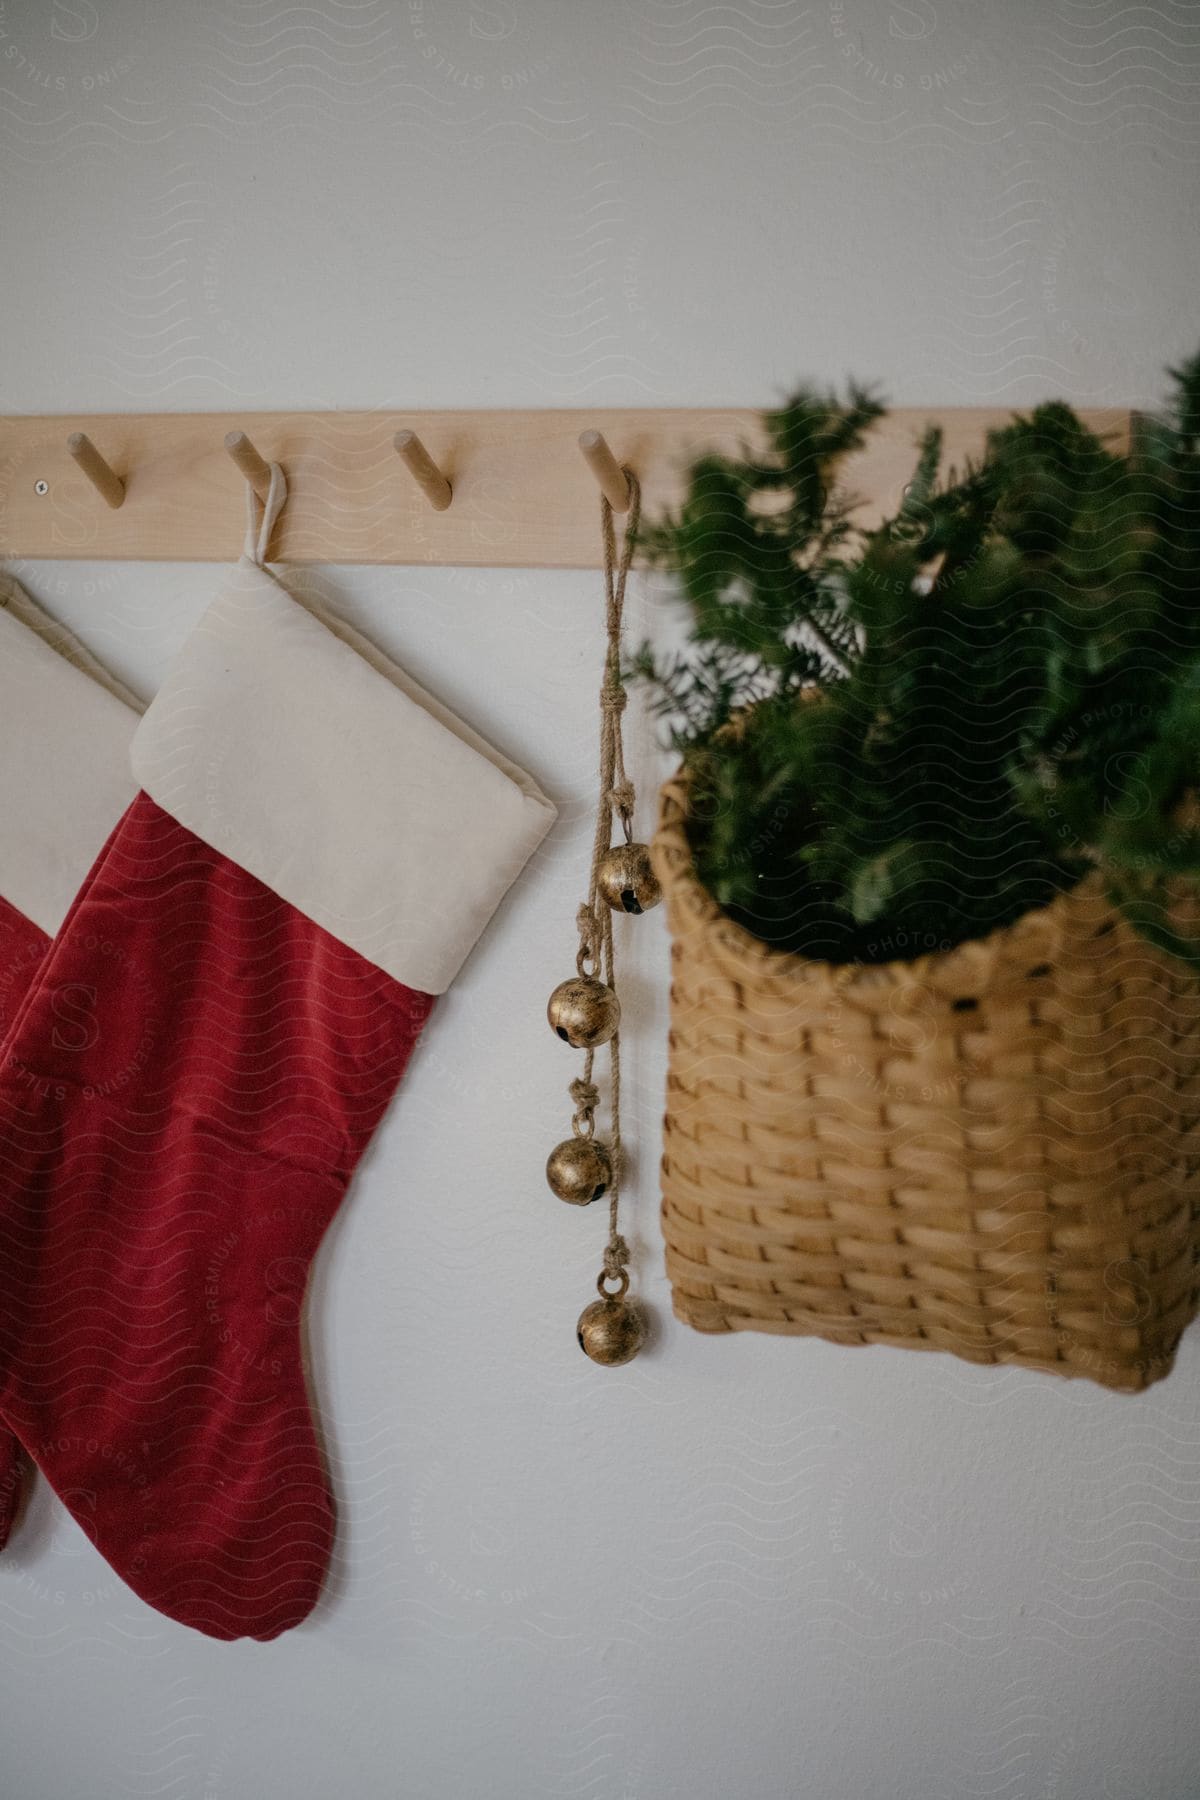 Christmas stockings, jingle bells, and a basket hang off a wall mounted peg rack.